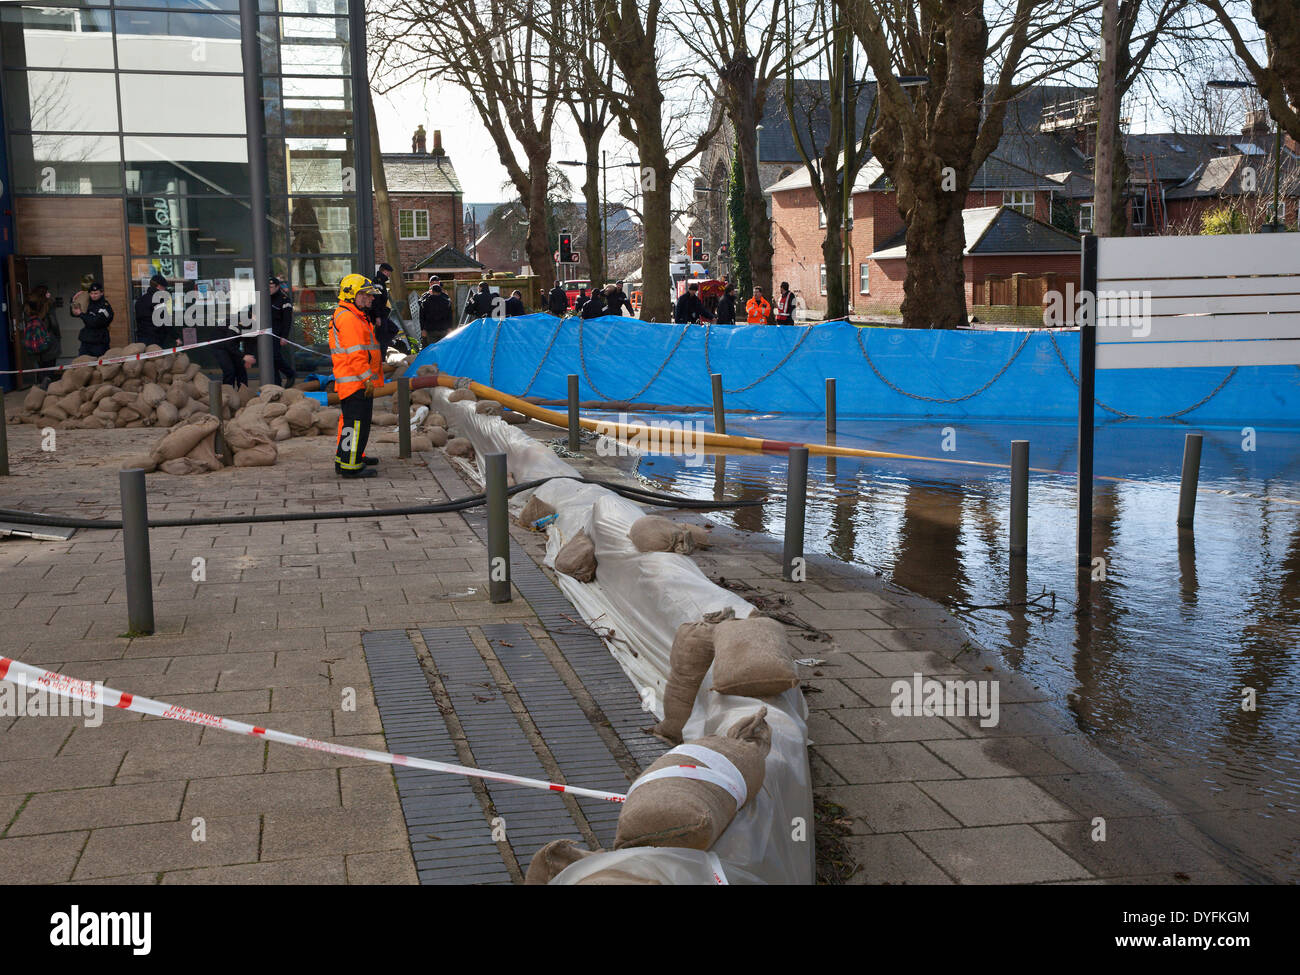 Il fiume inondato Itchen a Park Avenue e Winchester School of Art, Hampshire, Inghilterra, Regno Unito. Le inondazioni stanno diventando sempre più frequenti con il cambiamento climatico. Foto Stock